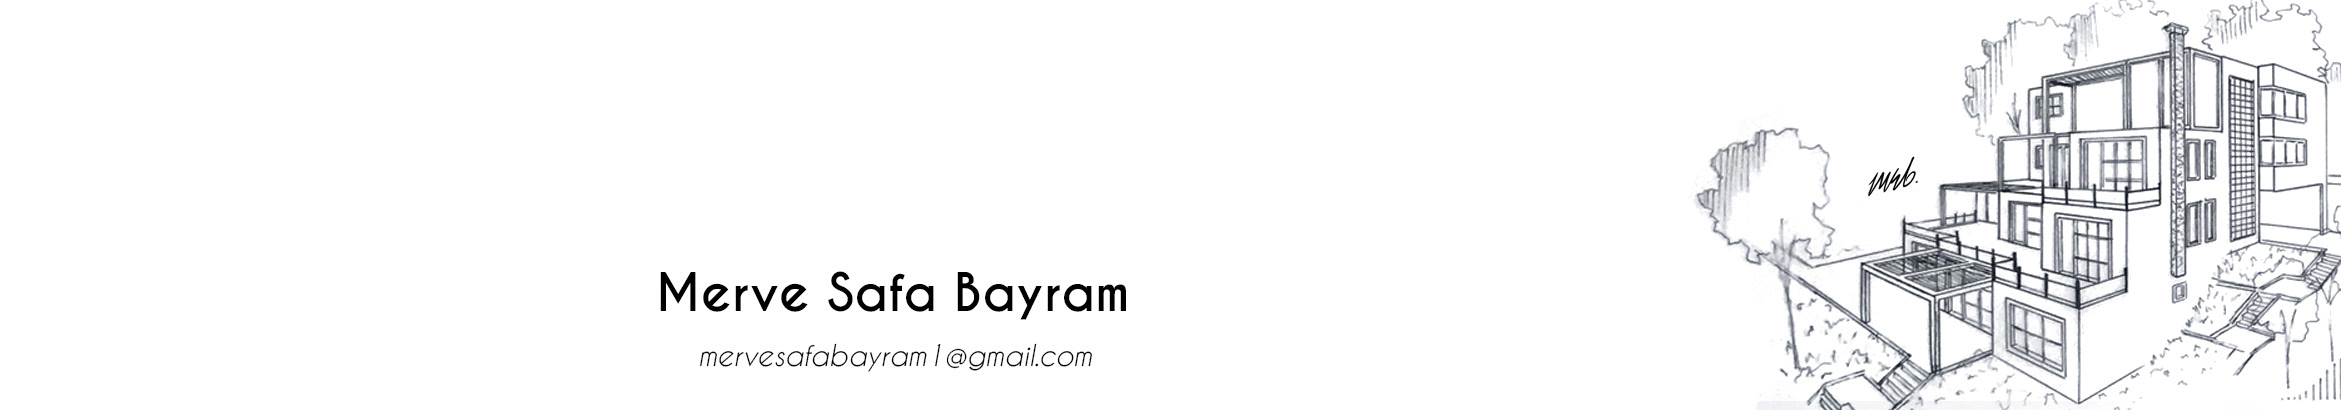 Merve Safa Bayram のプロファイルバナー